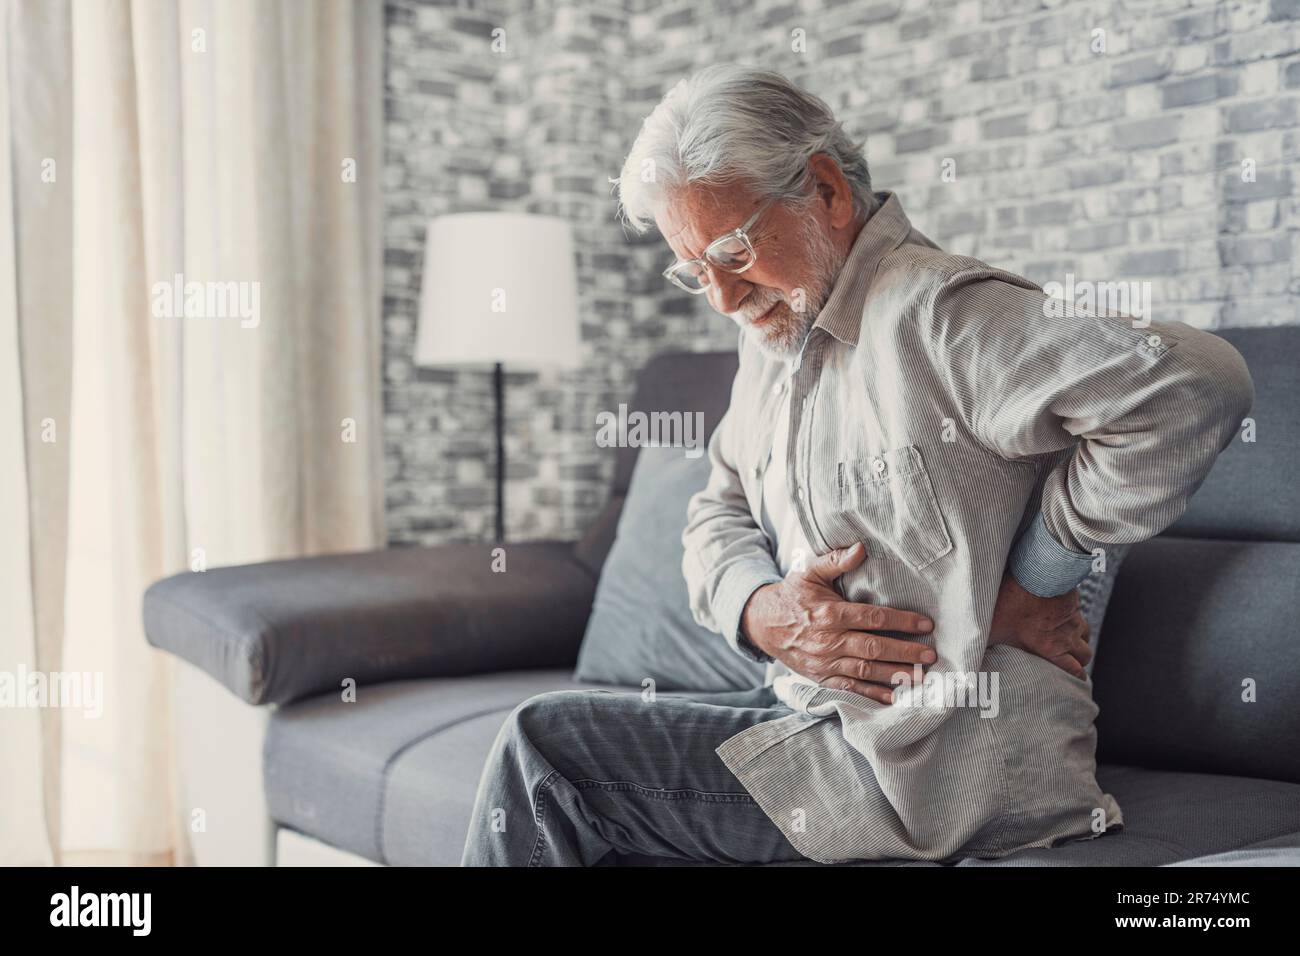 Aufgebrachter älterer Mann fühlt plötzliche Rückenschmerzen Muskelschmerzen Spannungsverletzung zu Hause sitzend, trauriger alter Großvater berührt Wirbelsäule mit Rückenschmerzen im unteren Lumbago Arthrose, Rückenschmerzen Konzept Stockfoto